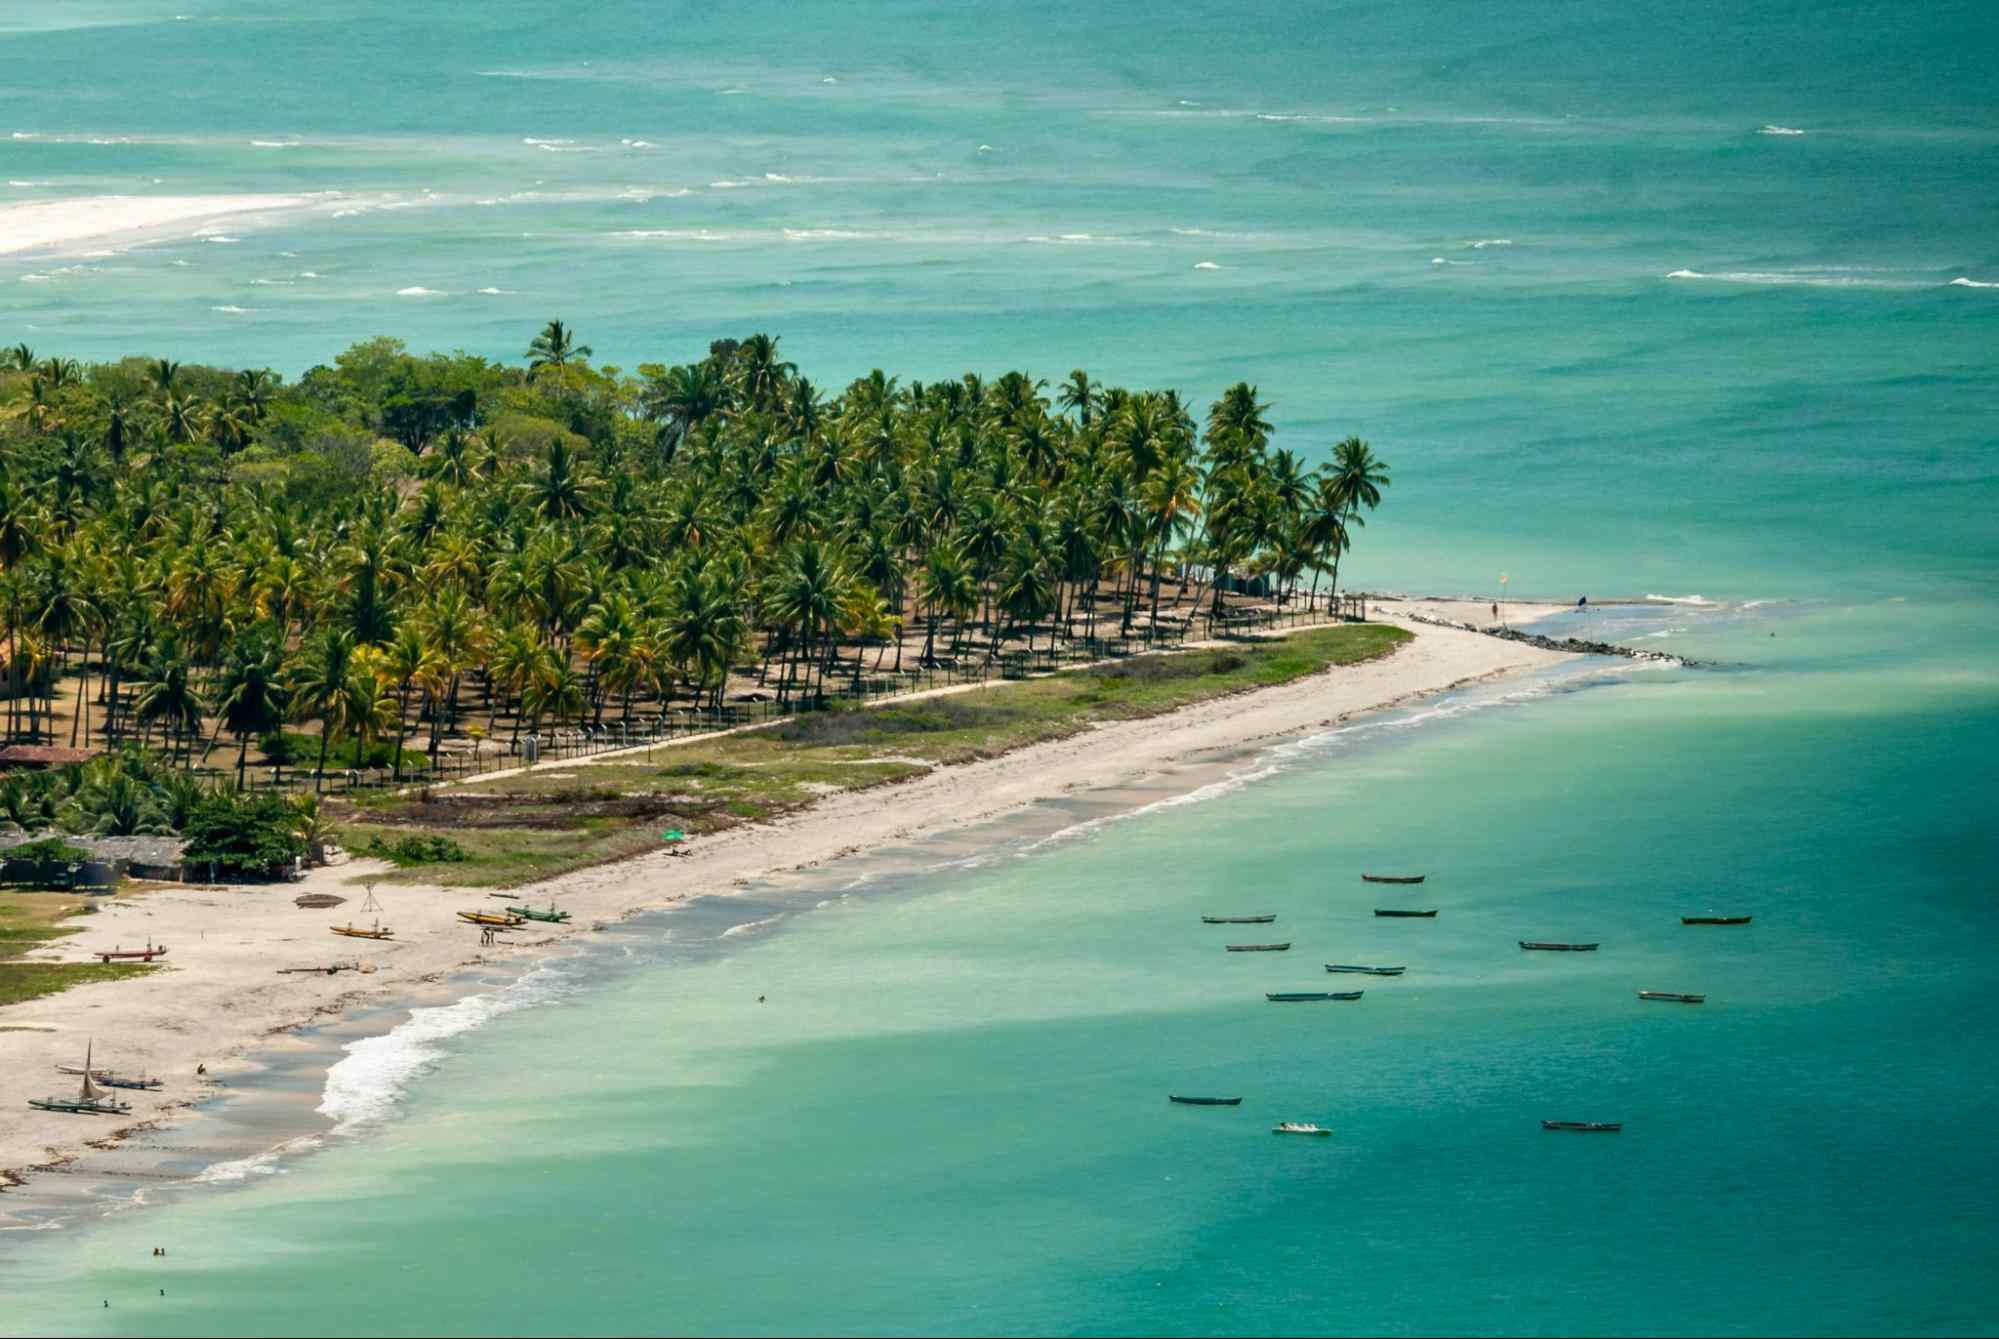 Foto aérea de parte da Ilha de Itamaracá. Pontal banhado pelo mar azul claro, com faixa de areia branca, gramado e diversos coqueiros.